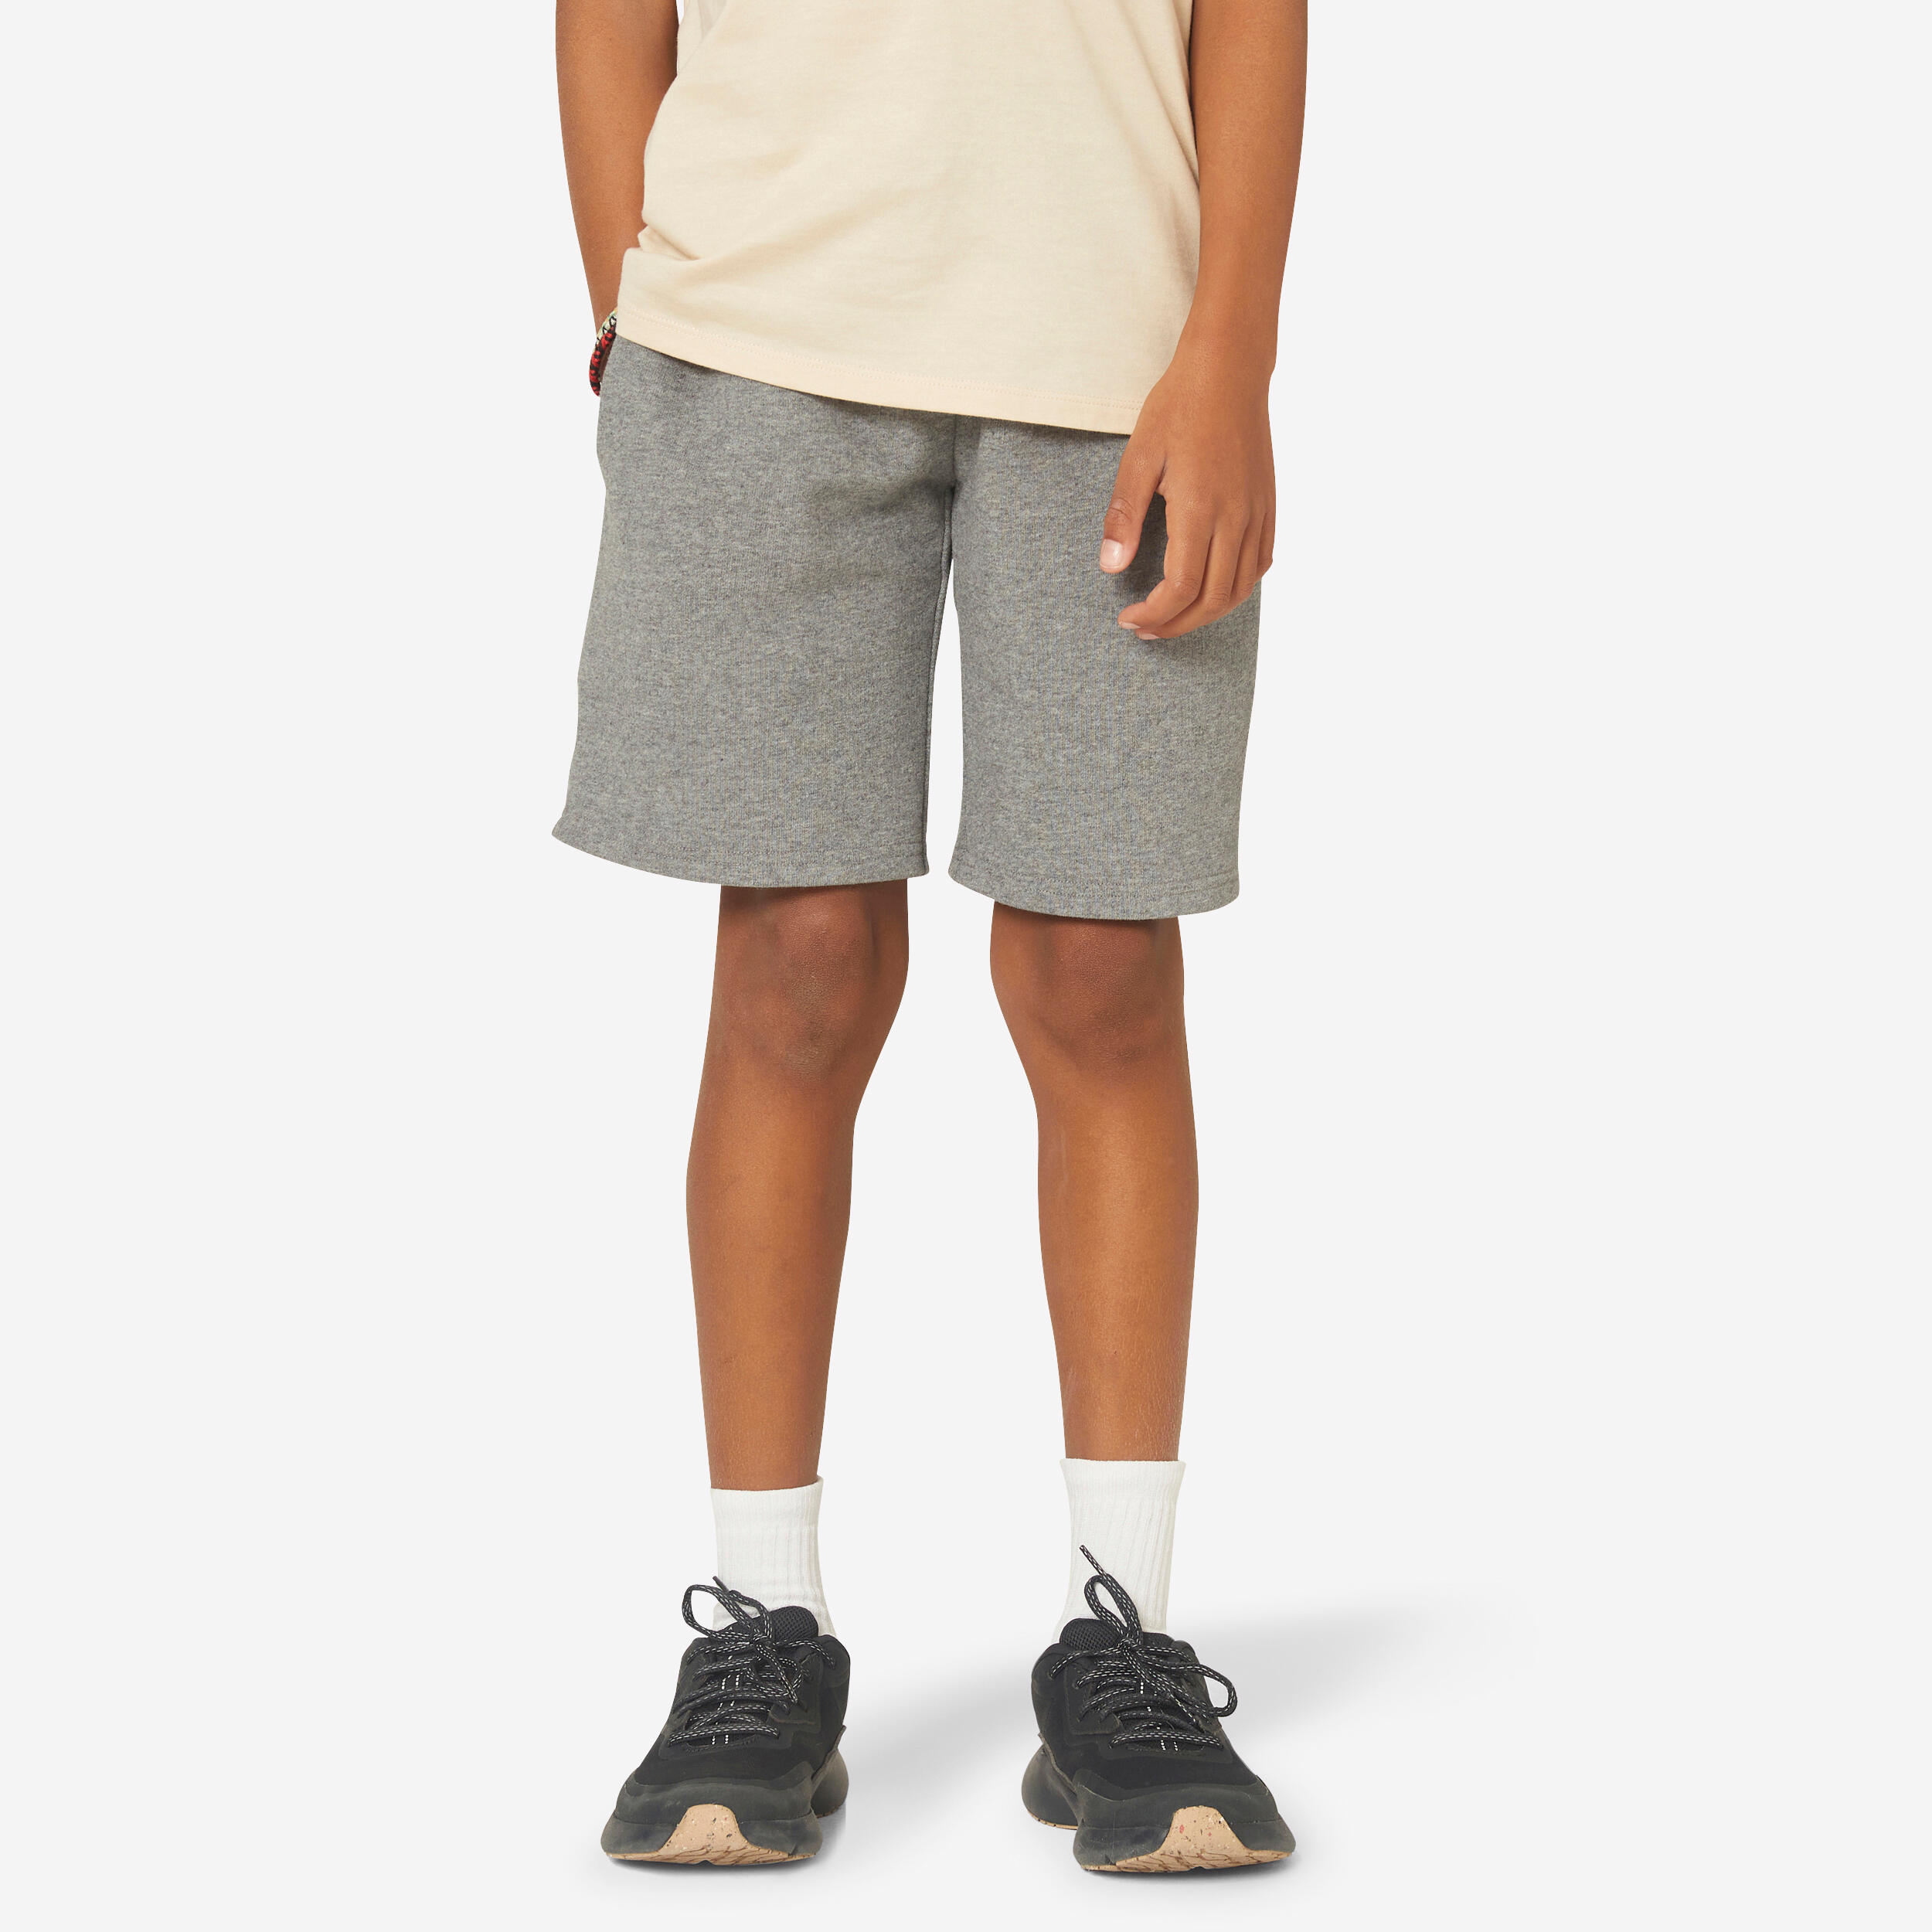 DOMYOS Kids' Unisex Cotton Shorts - Mottled Grey